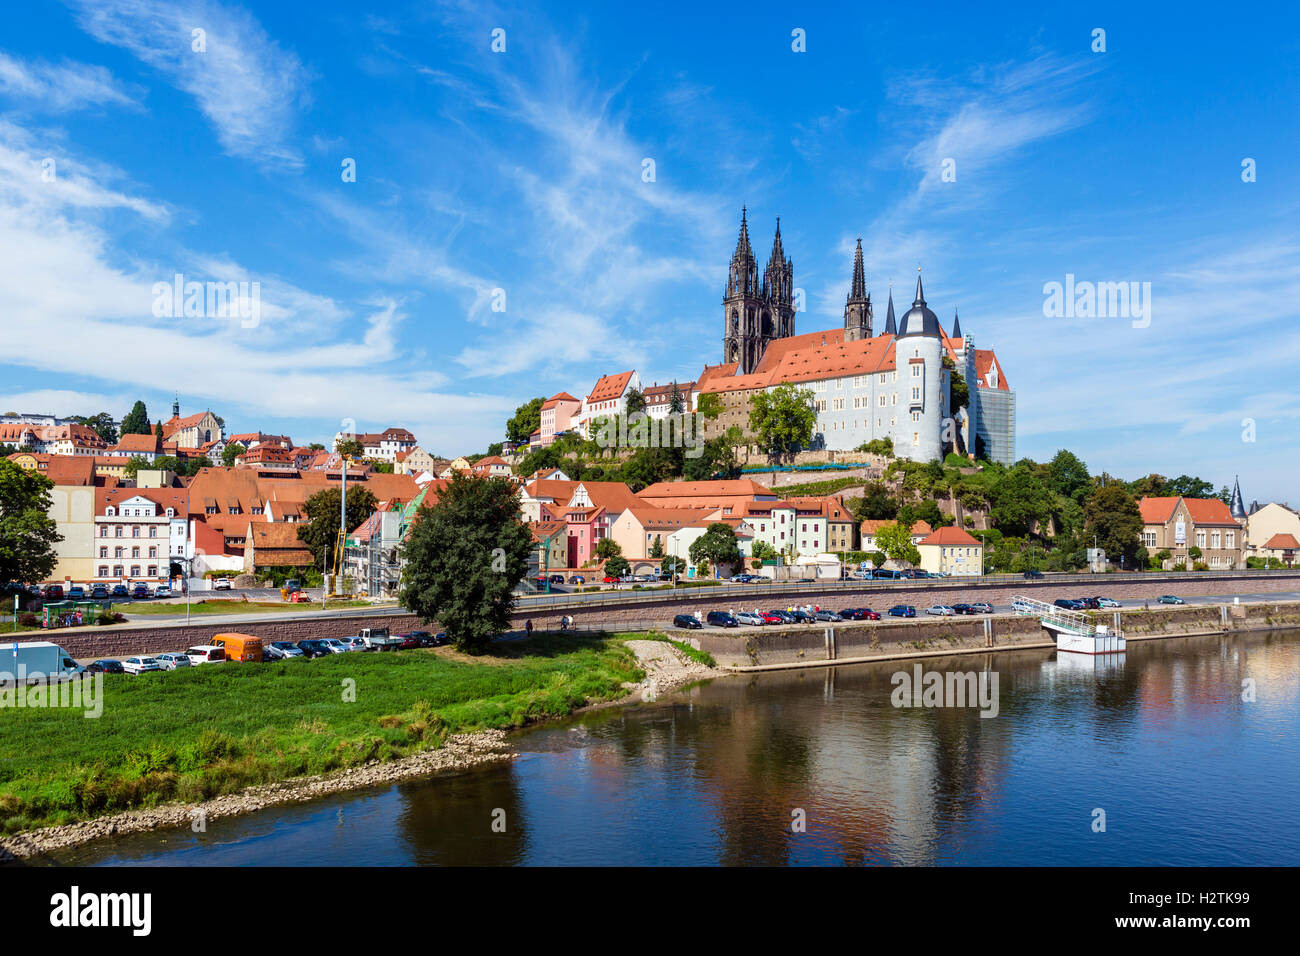 Die Albrechtsburg Schloss und Kathedrale betrachtet aus dem Fluss Elbe, Meißen, Sachsen, Deutschland Stockfoto